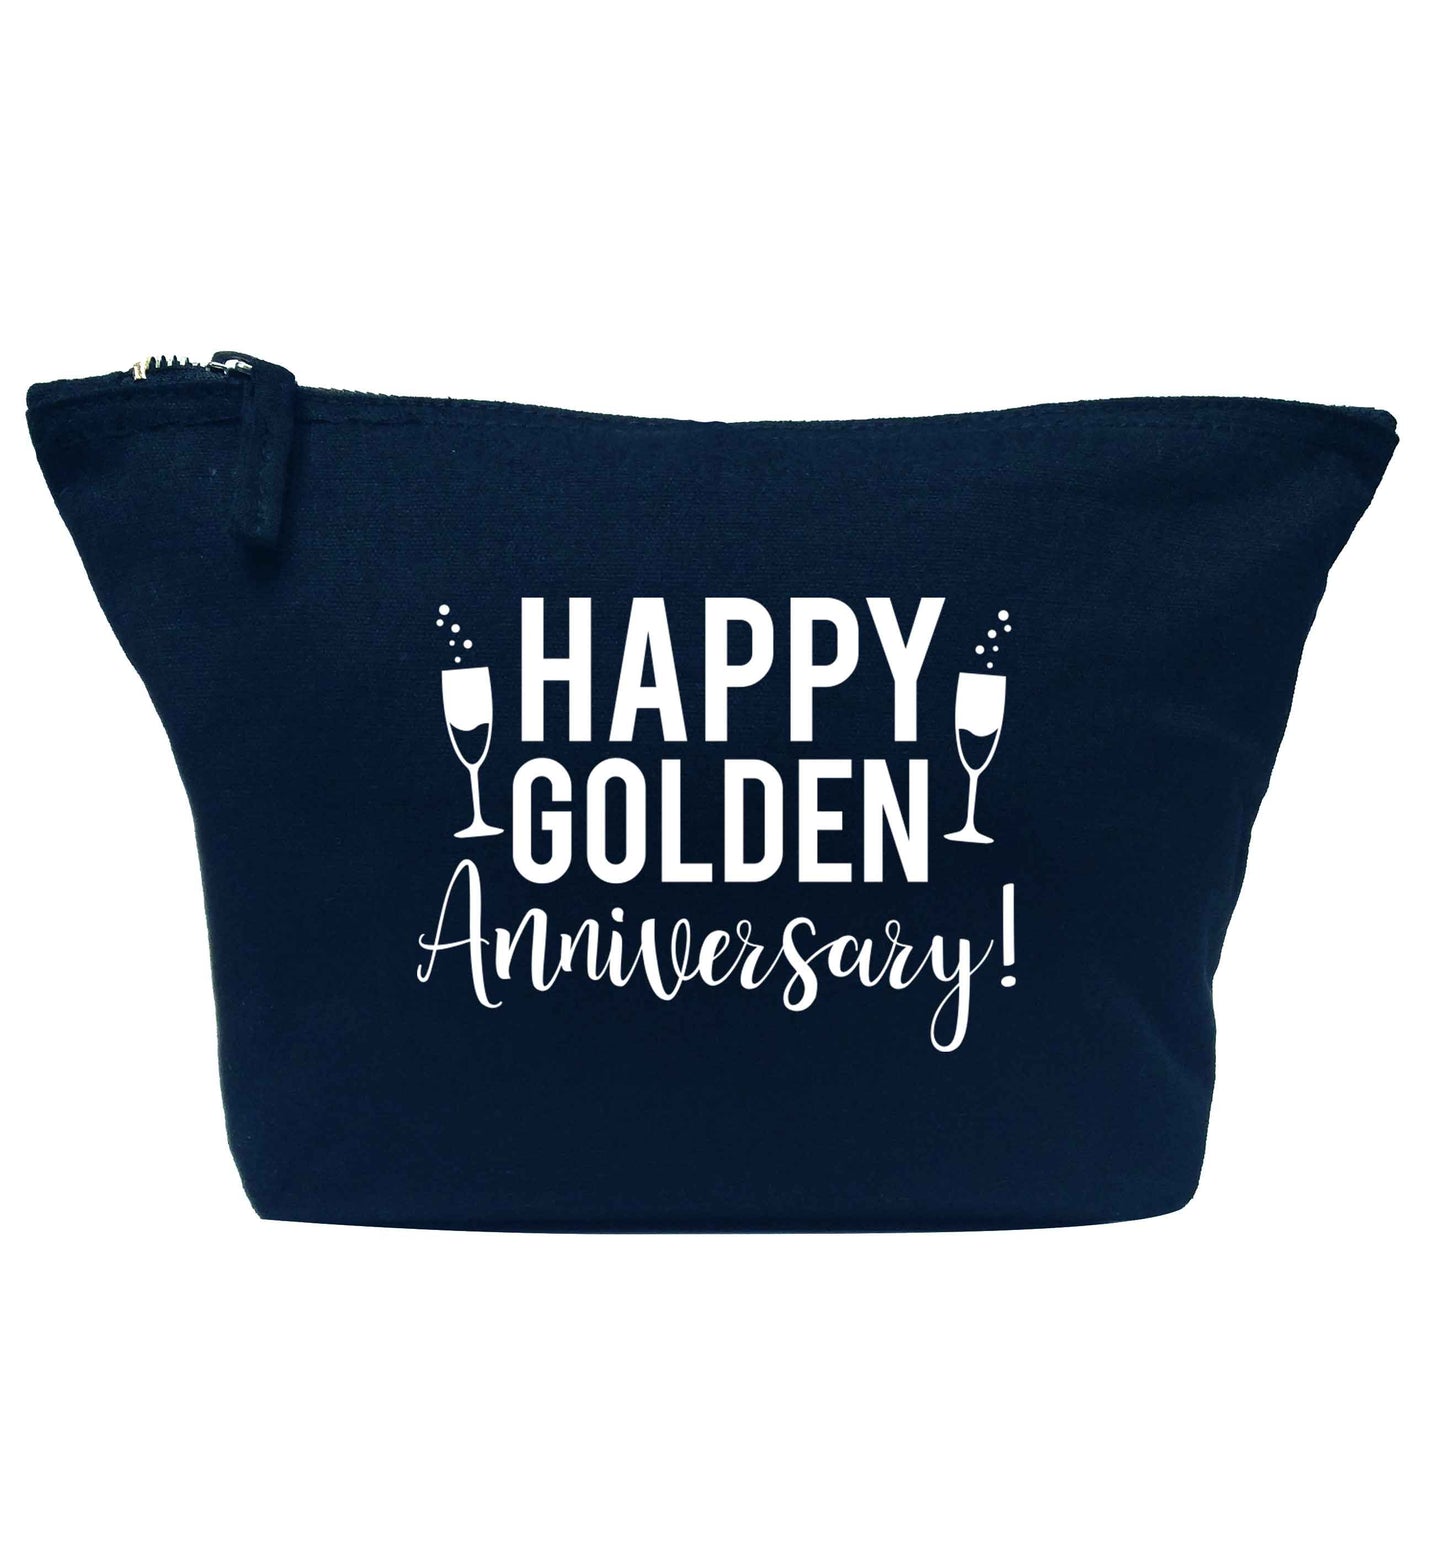 Happy golden anniversary! navy makeup bag